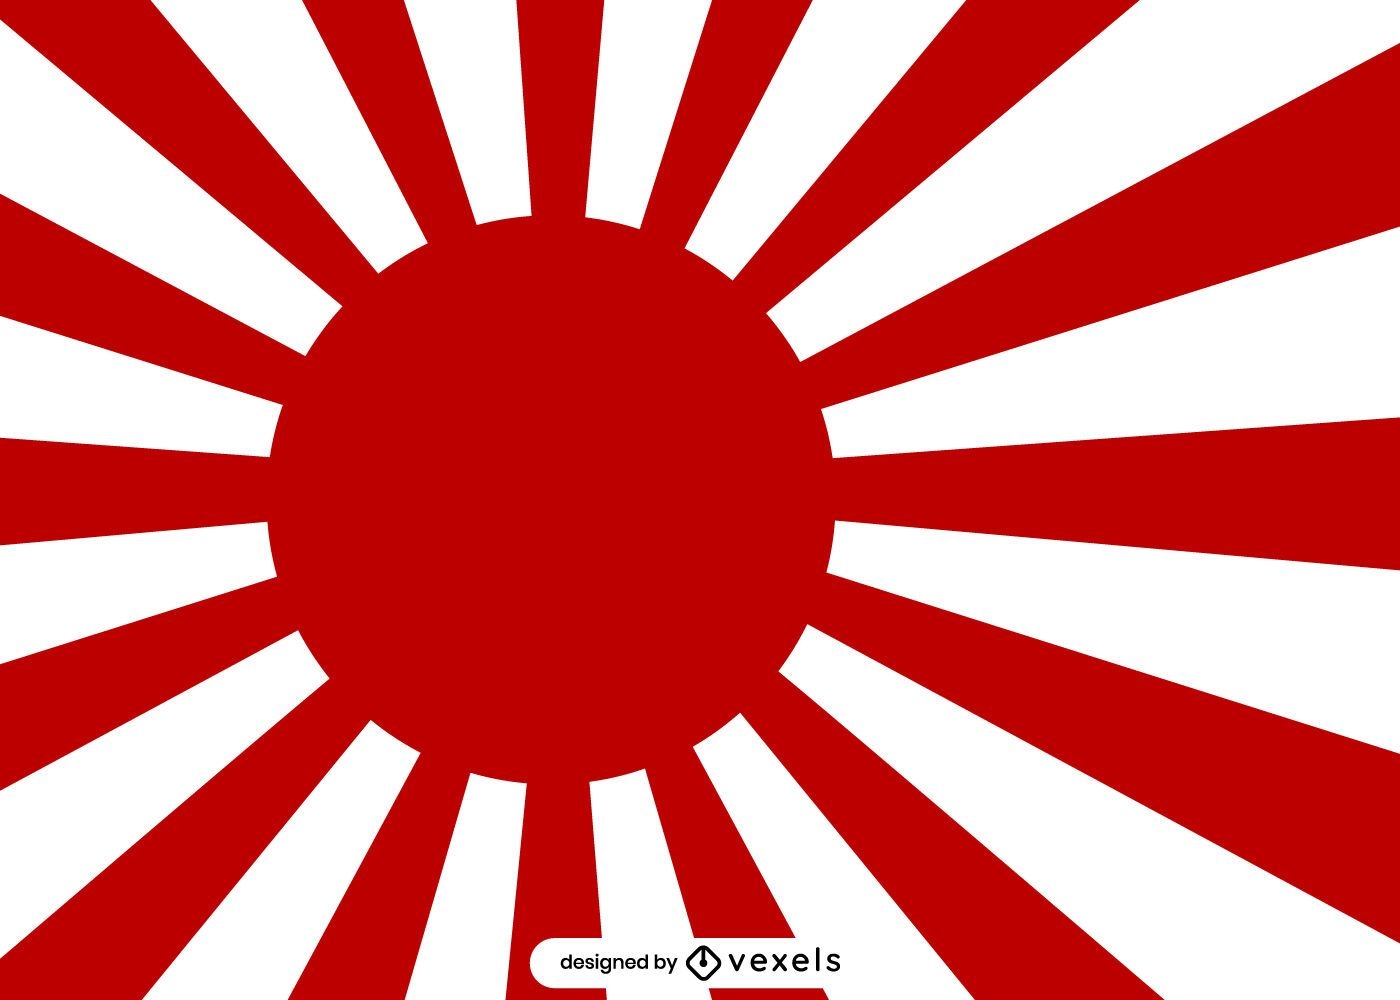 Ilustraci?n japonesa del sol naciente rojo